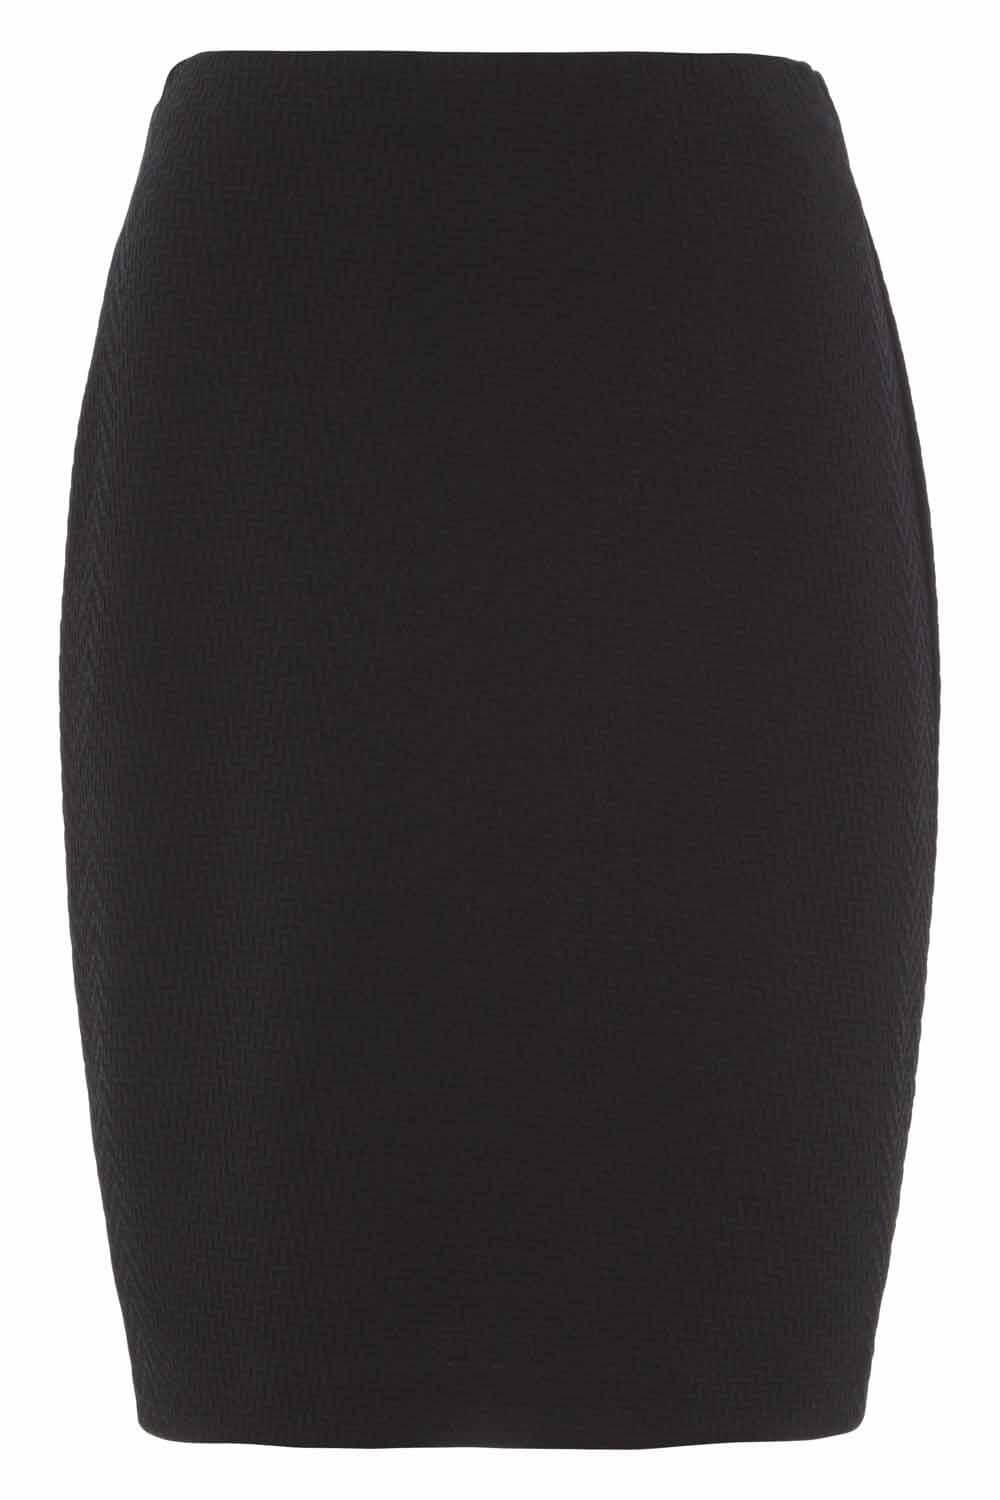 Black Textured Mini Skirt, Image 3 of 3